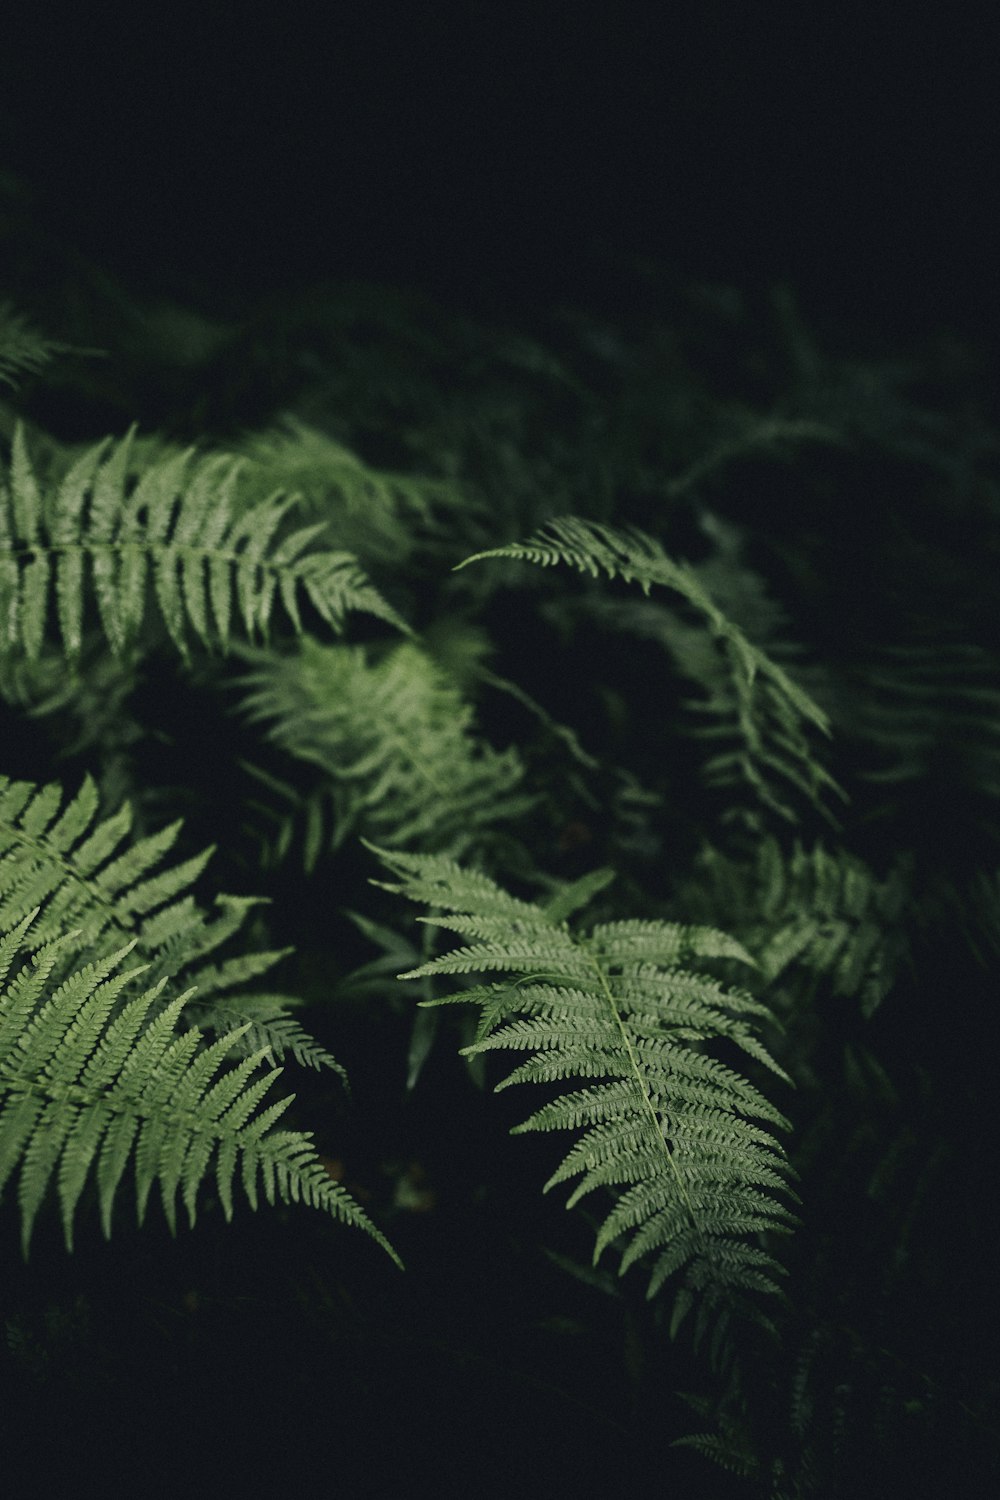 녹색 식물의 틸트 시프트 렌즈 사진